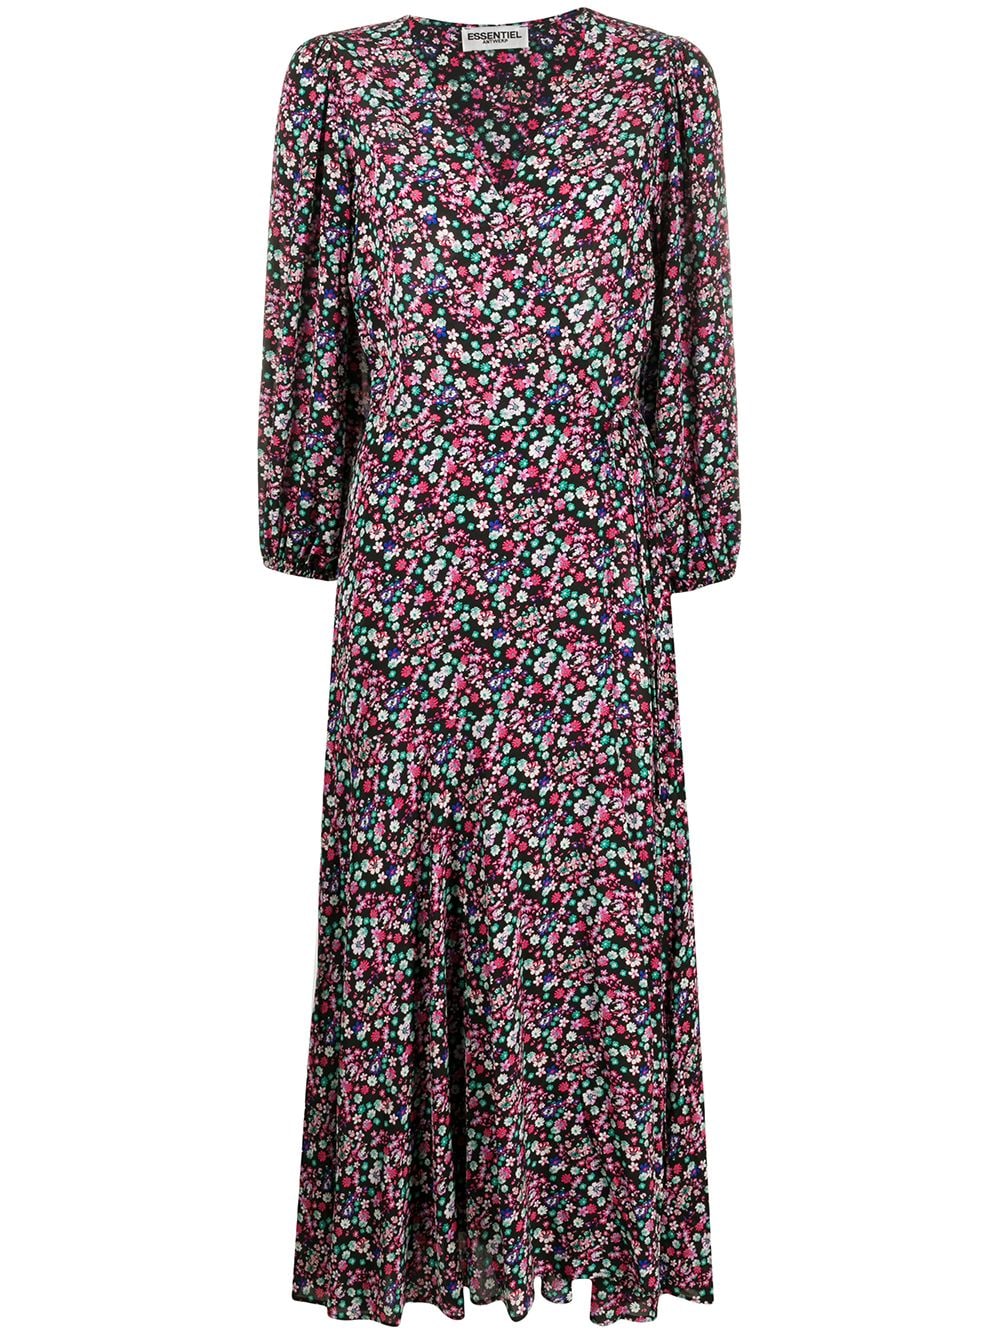 фото Essentiel antwerp расклешенное платье с цветочным принтом